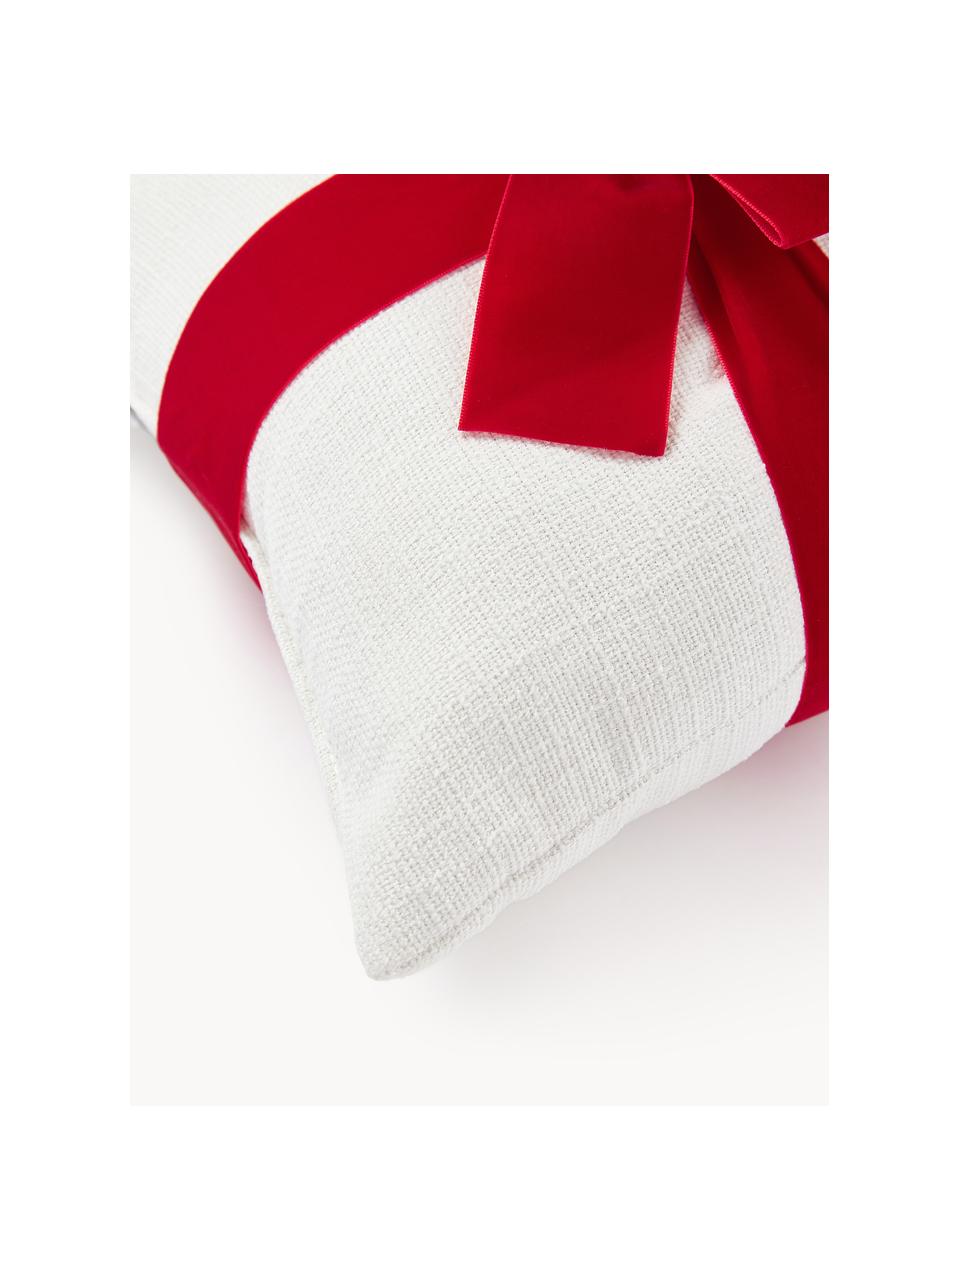 Cuscino con fiocco Cinnie, Esterno: 95% poliestere, 5% nylon, Bianco, rosso, Larg. 33 x Lung. 33 cm